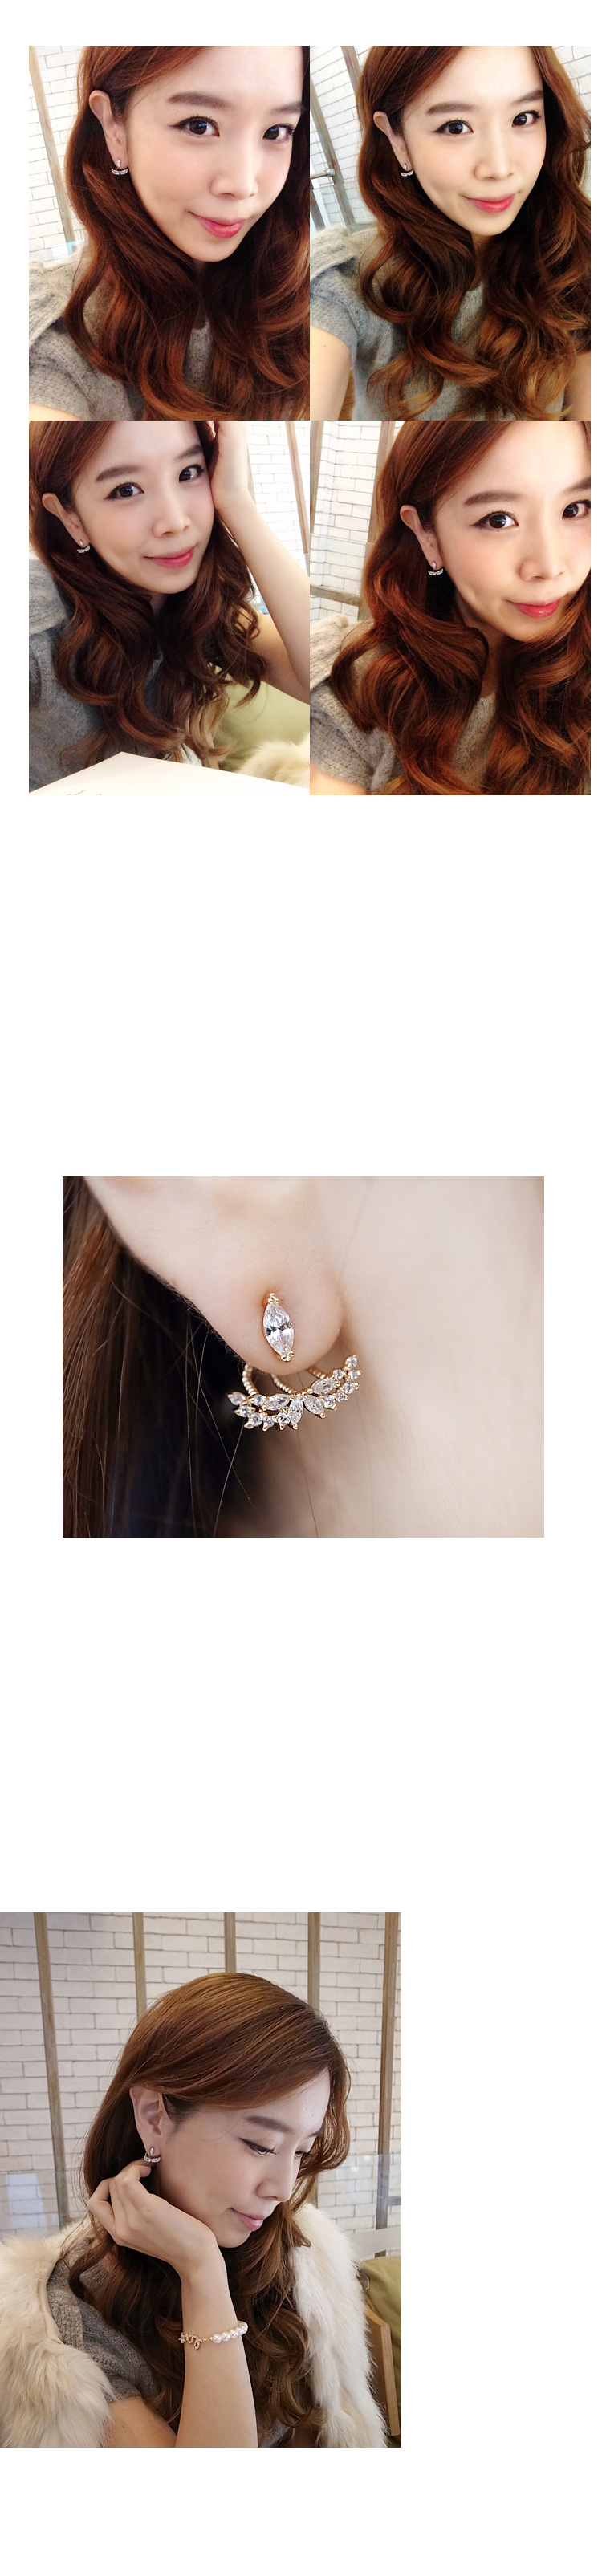 韓國 NaniWorld 立體碎鑽氛圍雙翼耳飾 #2610